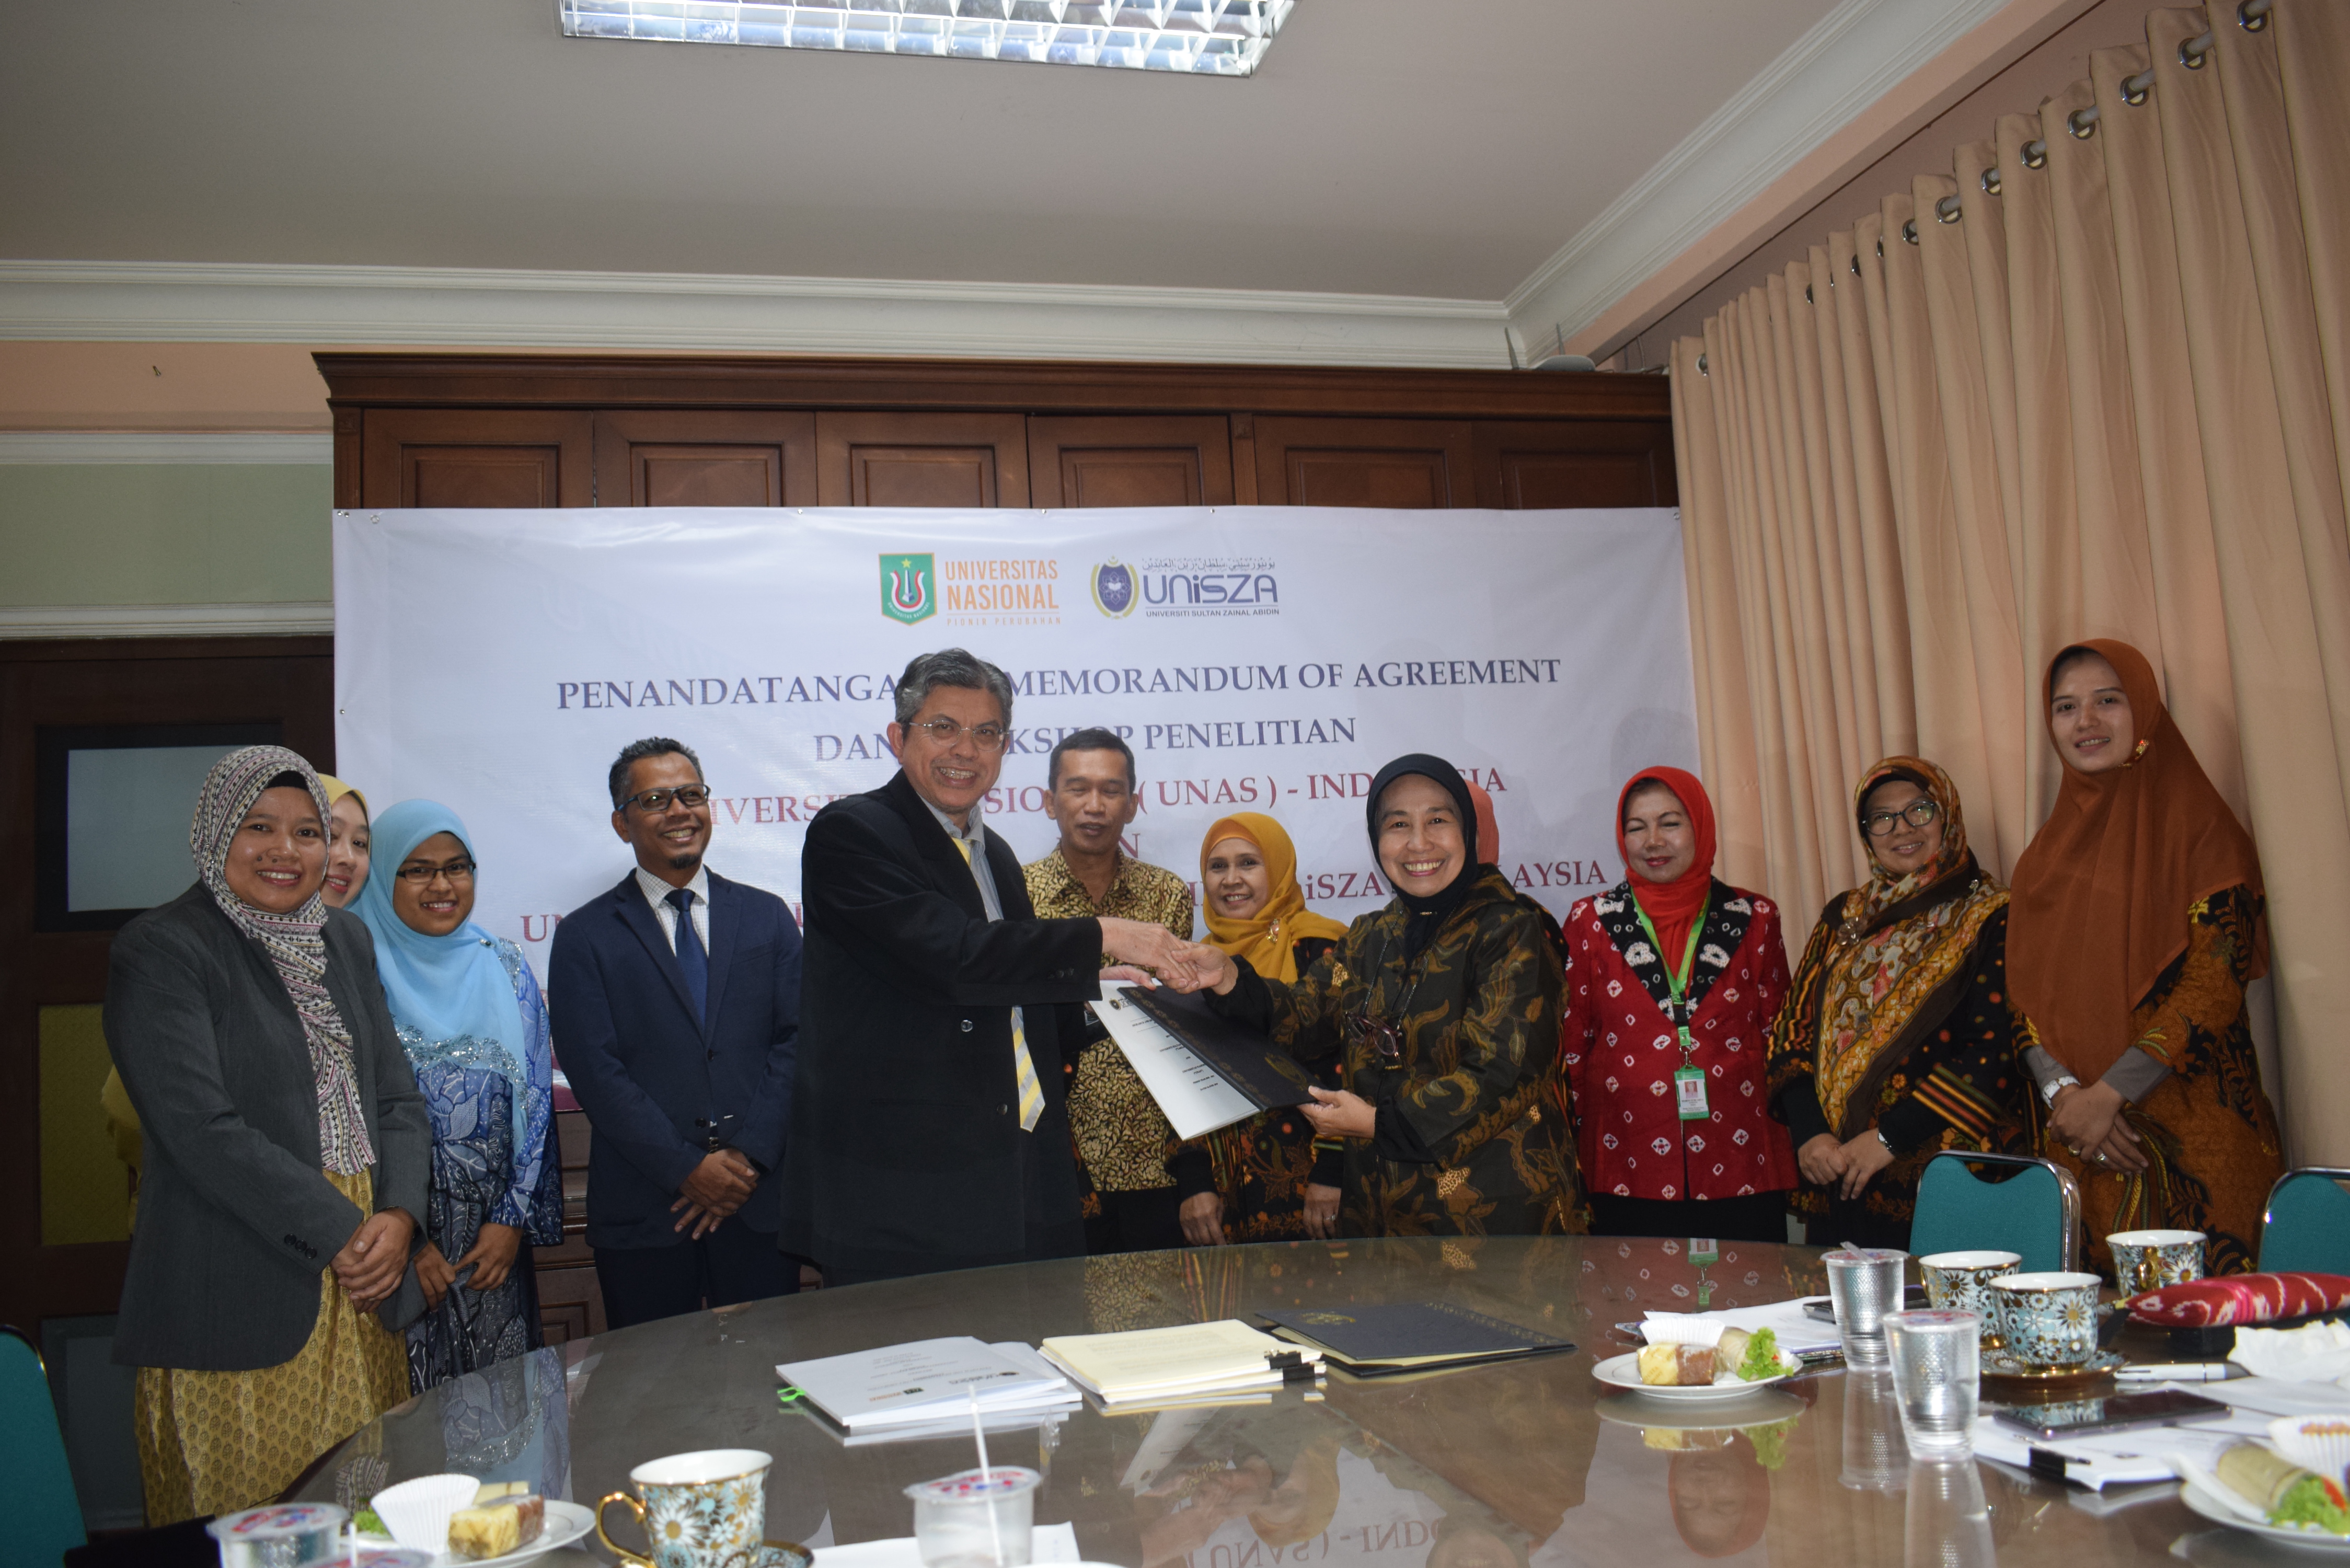 Gandeng Unisza Malaysia Unas Perkuat Kerjasama Di Bidang Penelitian Dan Workshop Universitas Nasional